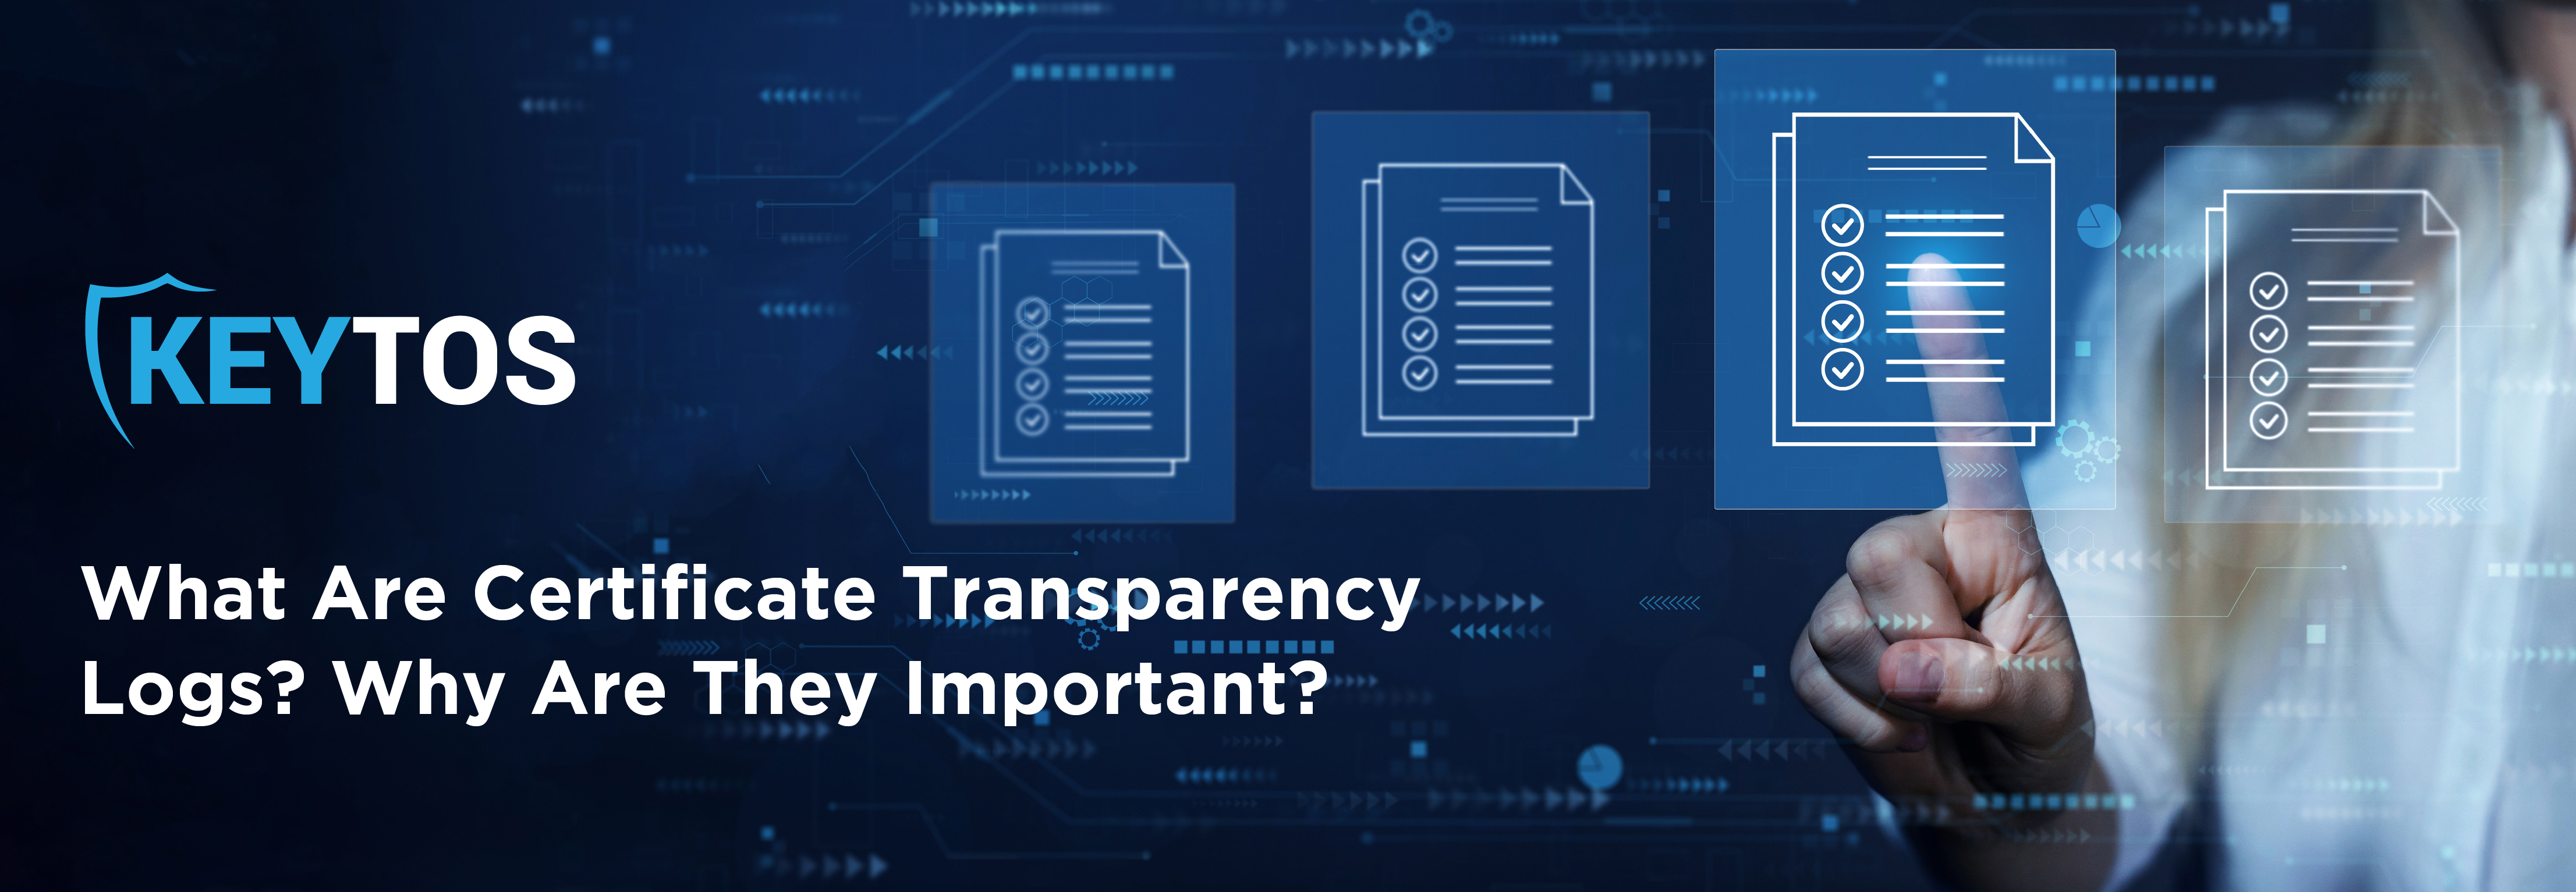 ¿Qué son los registros de transparencia de certificados y por qué son importantes los registros CT?